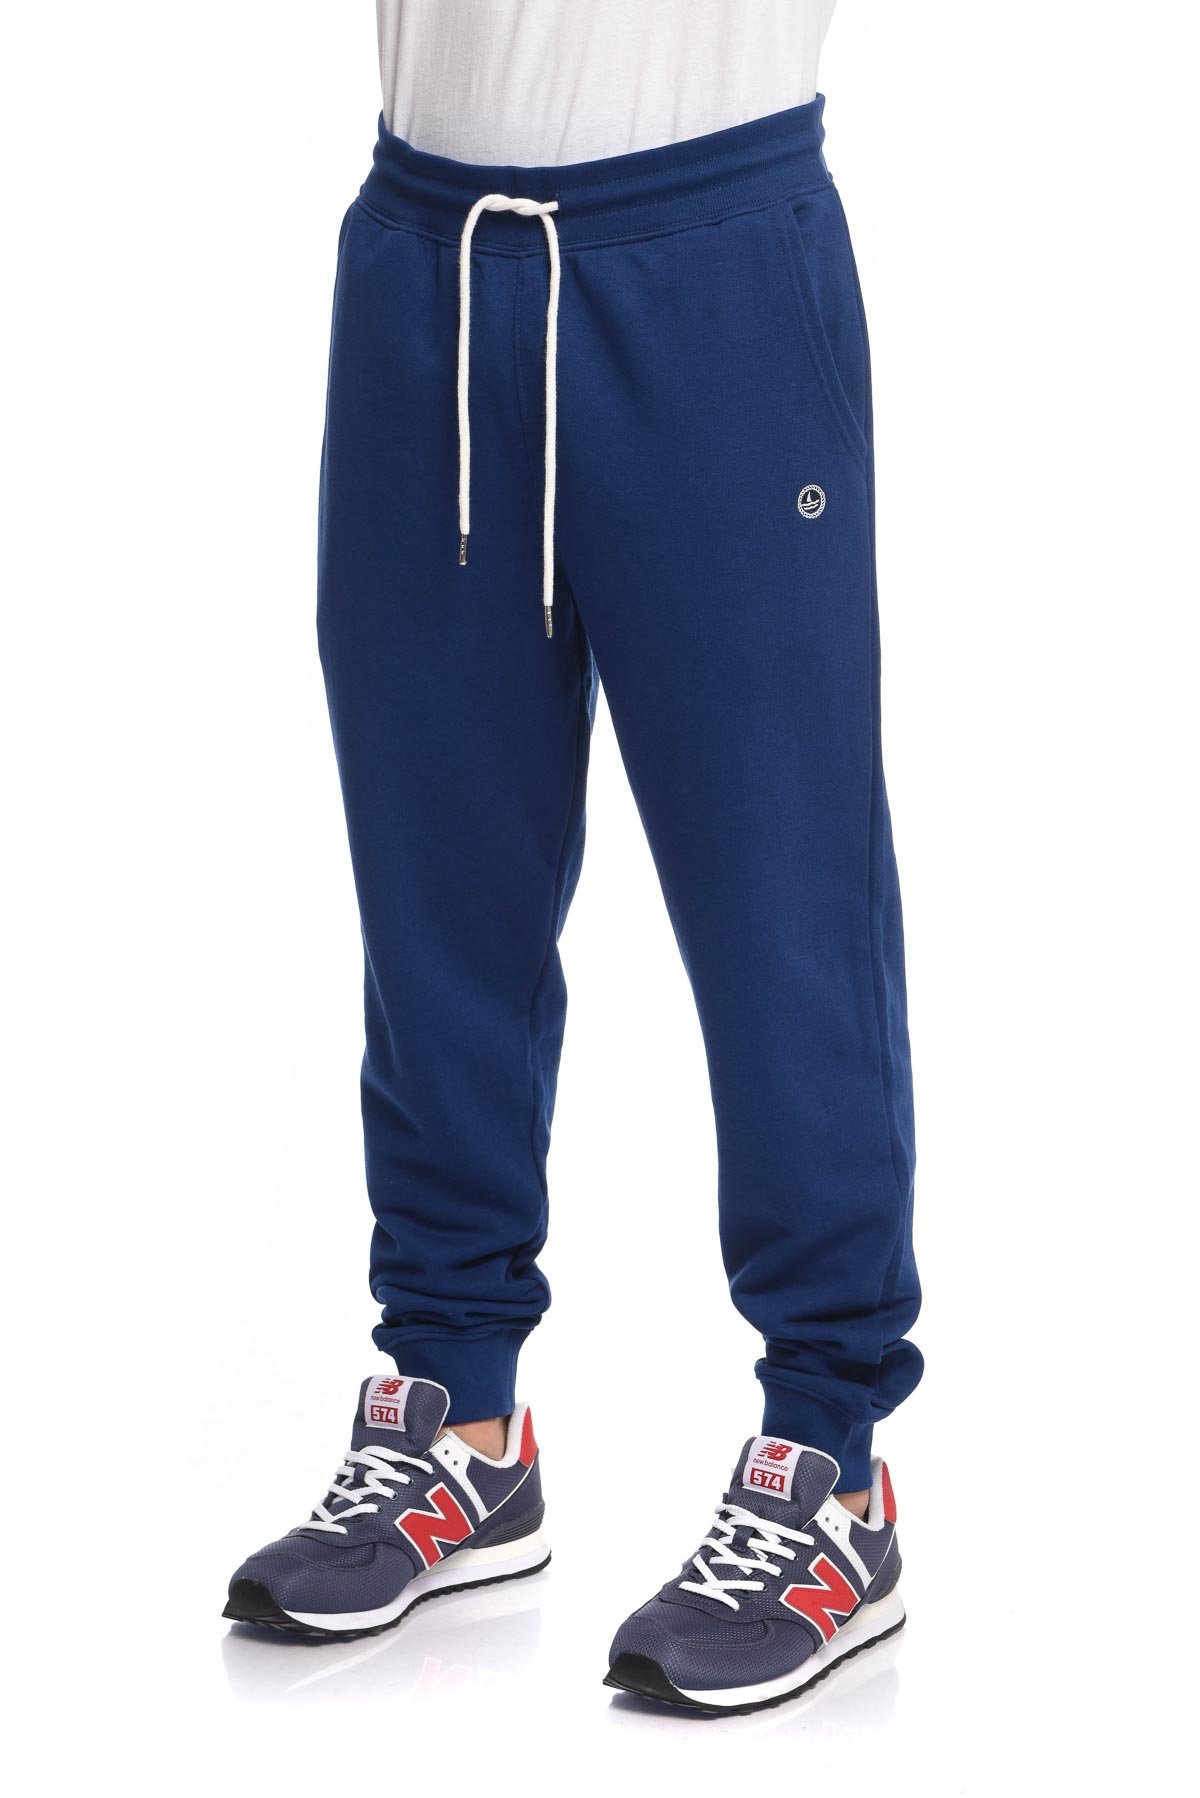 Спортивные брюки мужские NAVY SAIL NYC2701 синие XL